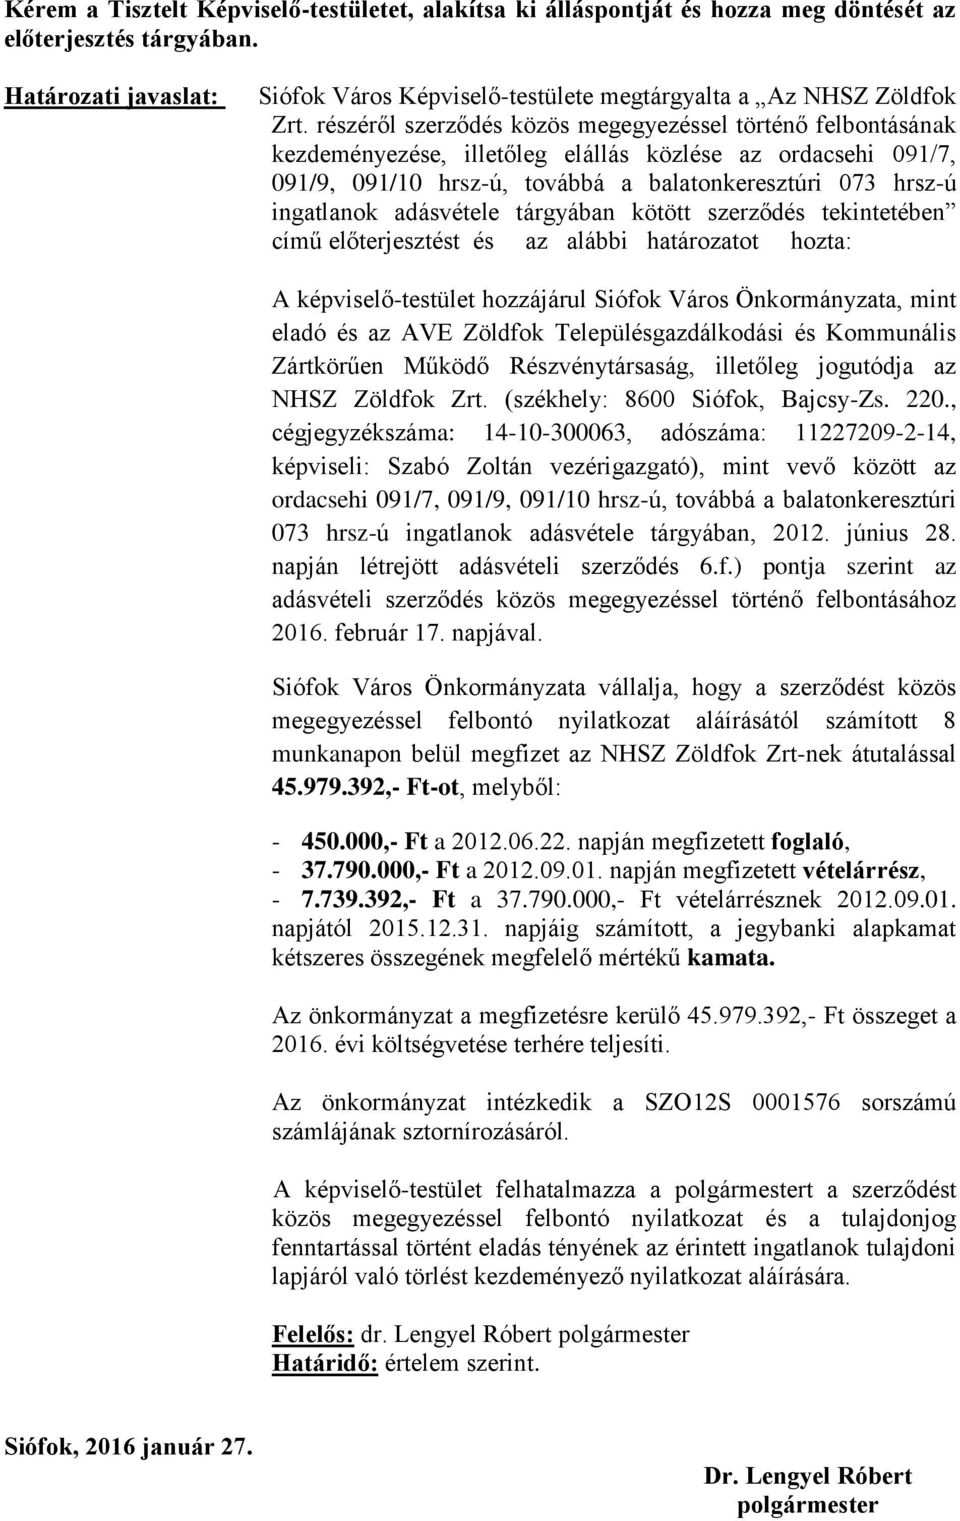 részéről szerződés közös megegyezéssel történő felbontásának kezdeményezése, illetőleg elállás közlése az ordacsehi 091/7, 091/9, 091/10 hrsz-ú, továbbá a balatonkeresztúri 073 hrsz-ú ingatlanok